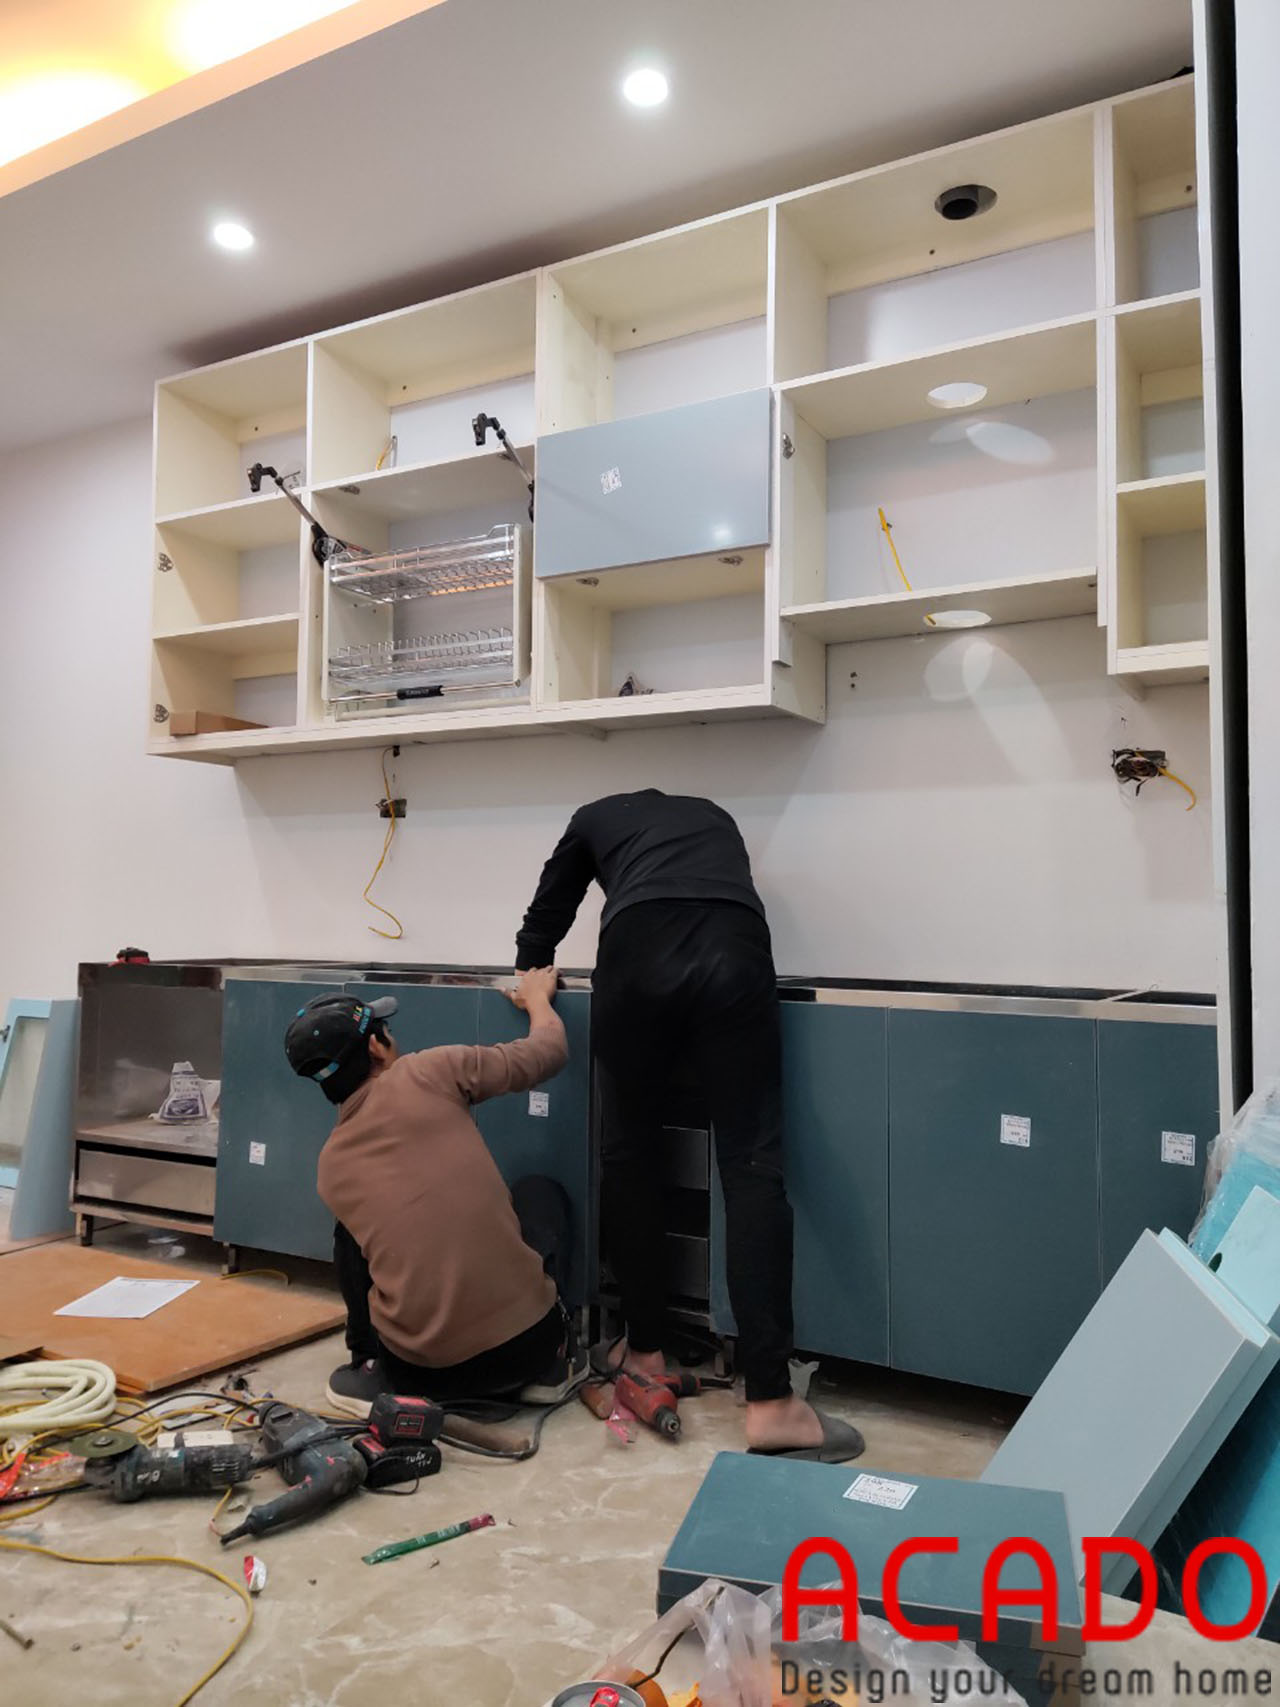 Thợ thi công ACADO thực hiện quá trình lắp đặt tủ bếp - Thi công tủ bếp tại Cầu Giấy - HN